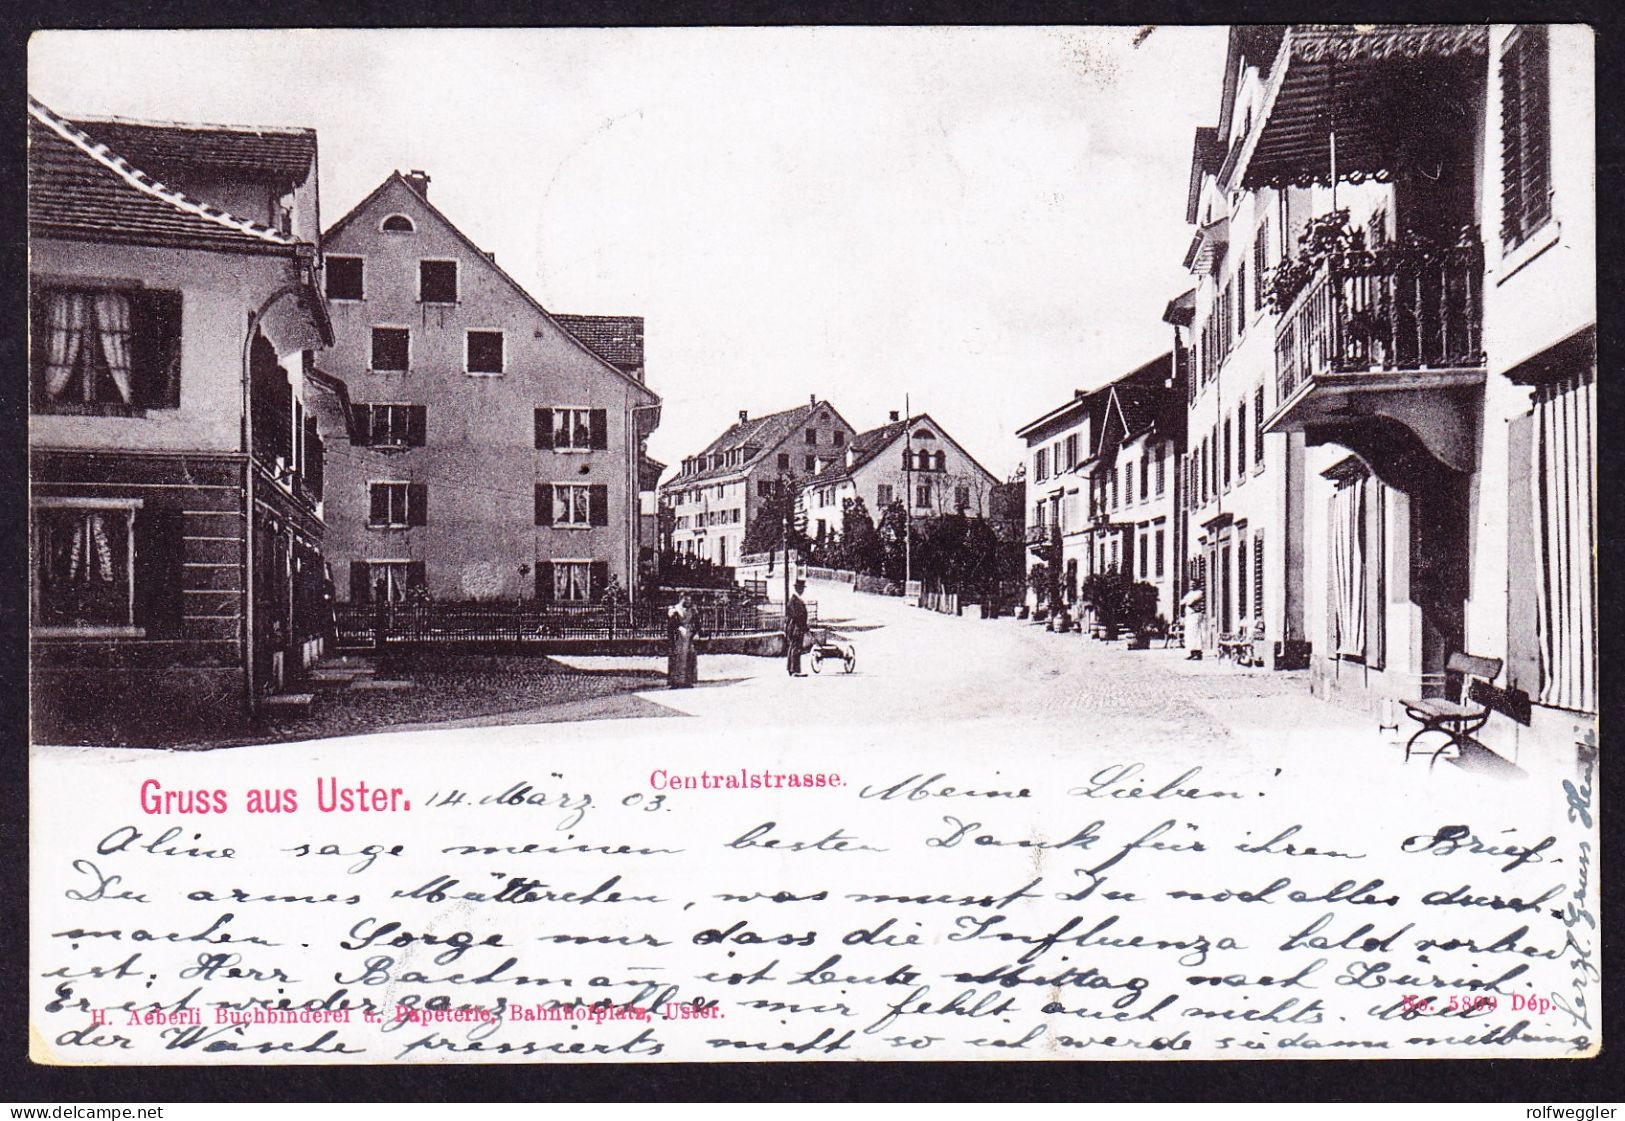 1903 Gelaufene AK: Gruss Aus Uster. Mit Stempel LÖWEN APOTHEKE. Centralstrasse - Uster